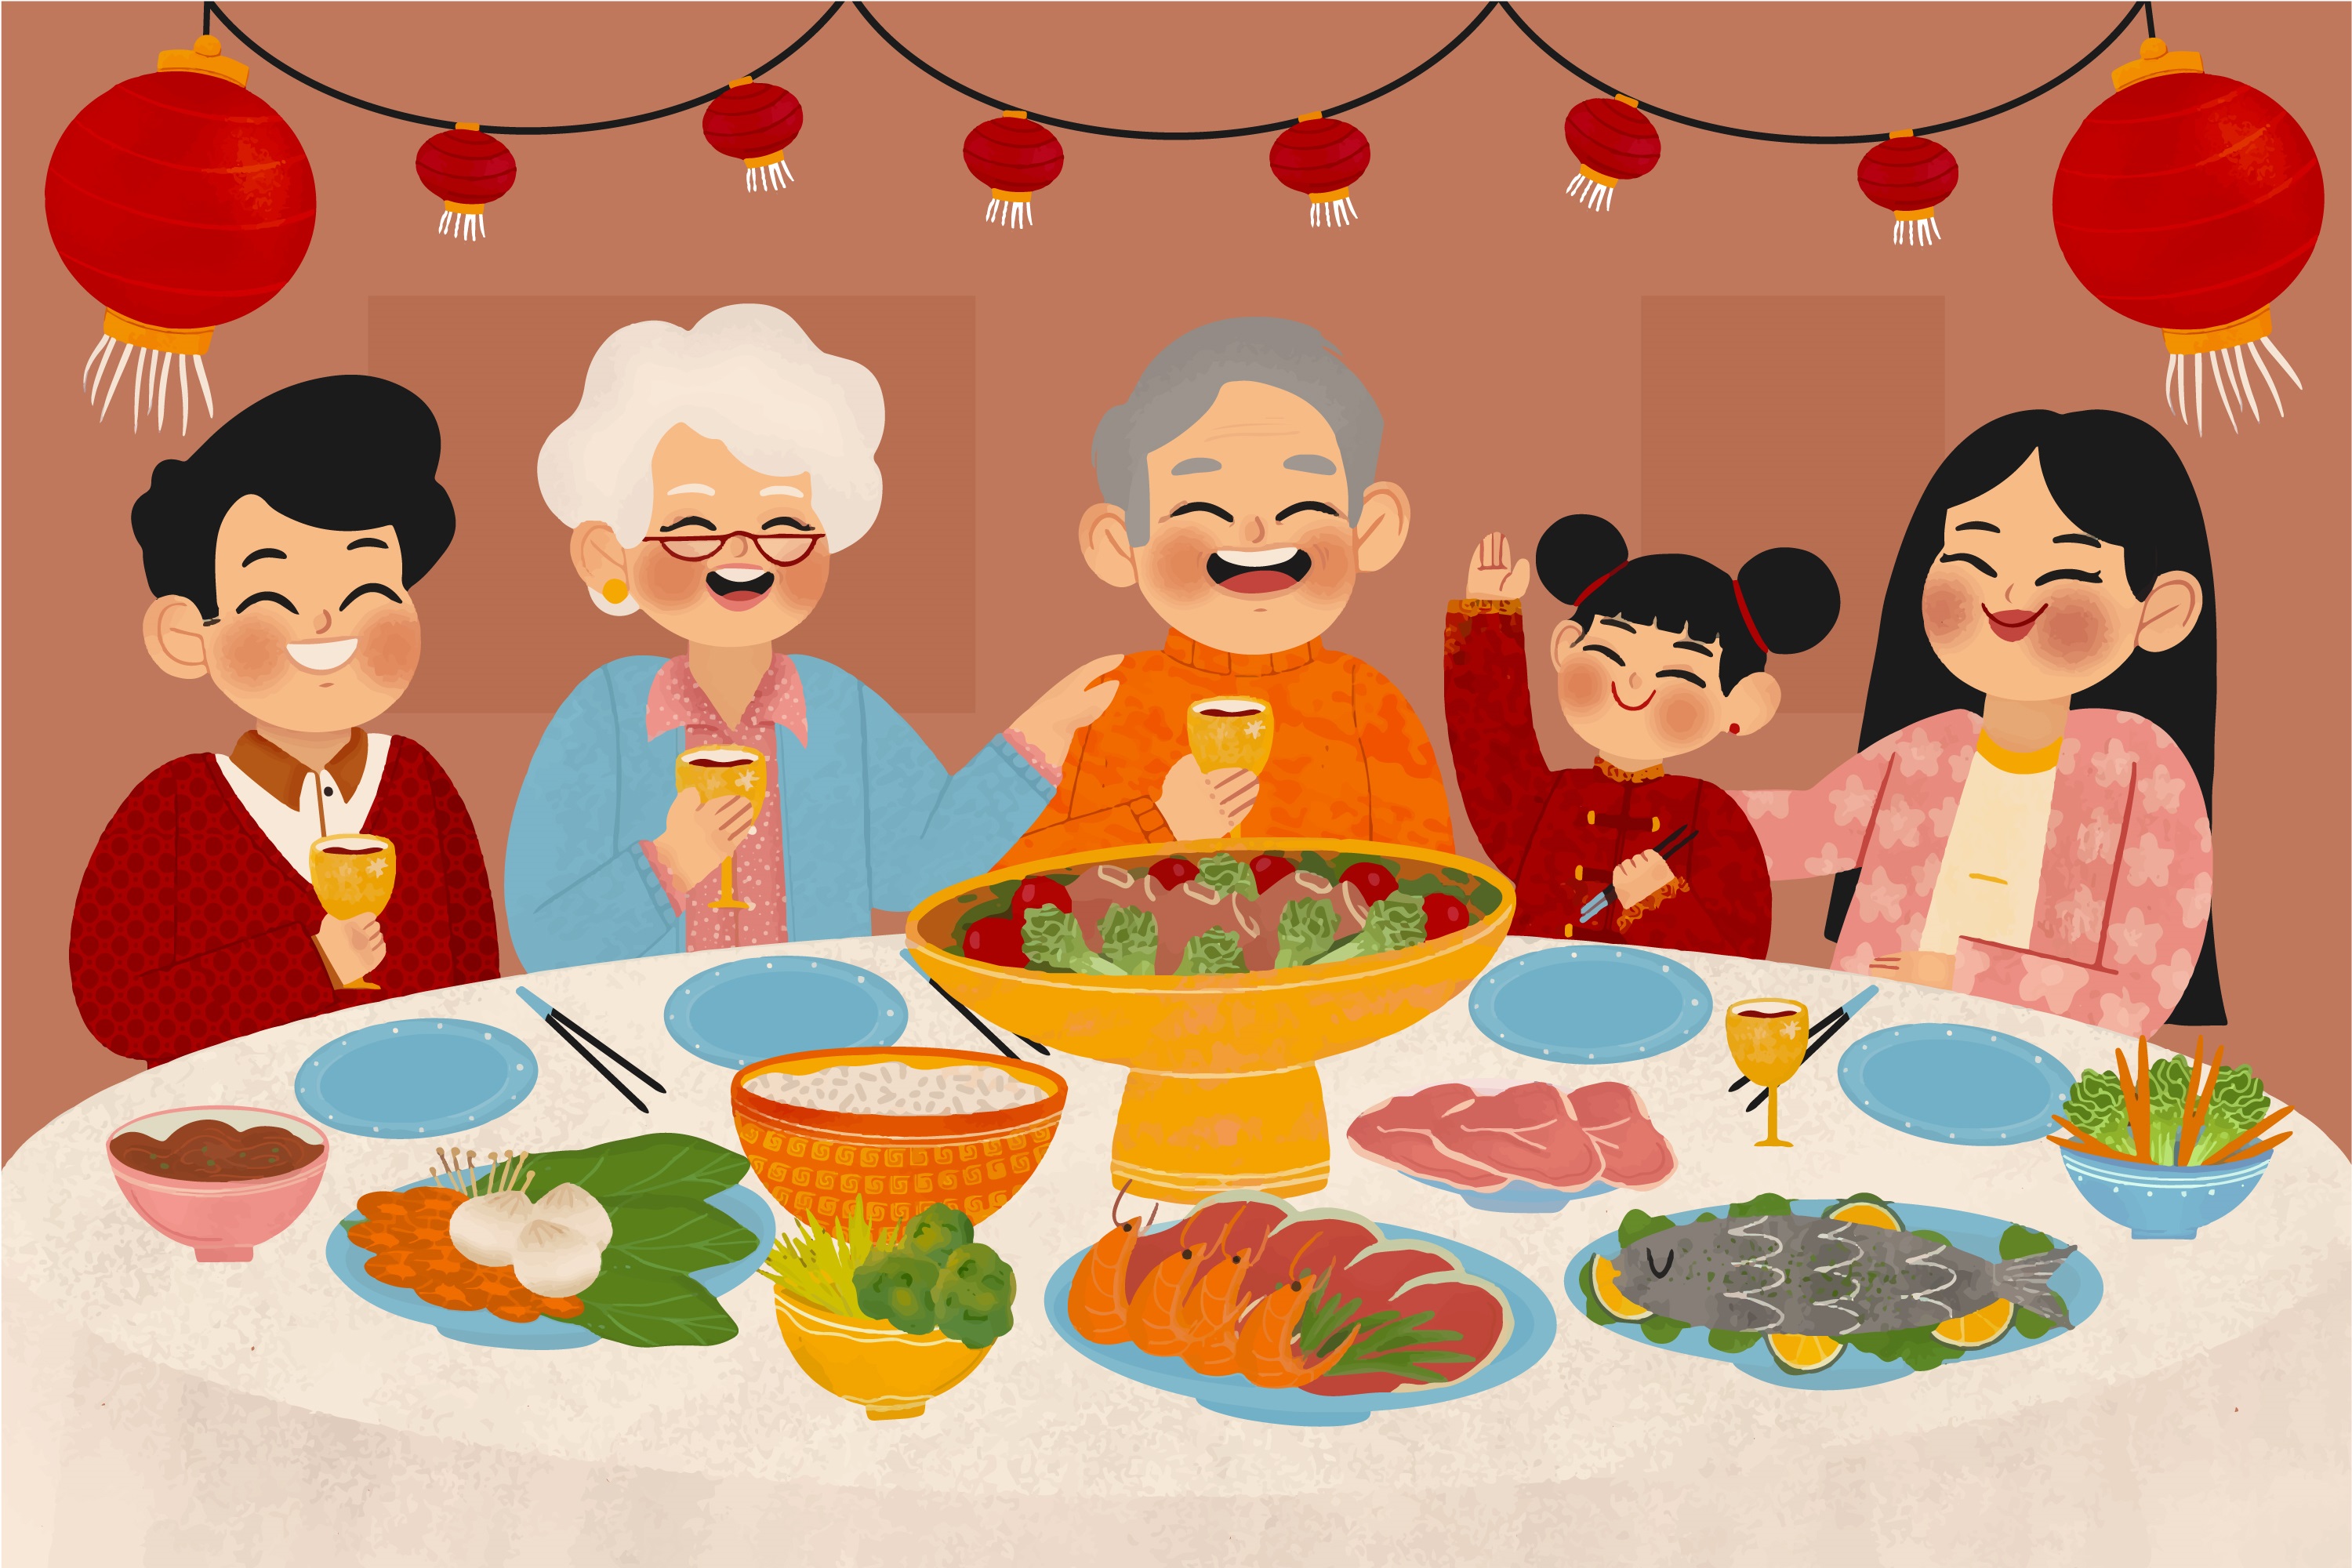 春节快乐一家人开心吃年夜饭矢量素材2(AI+EPS)